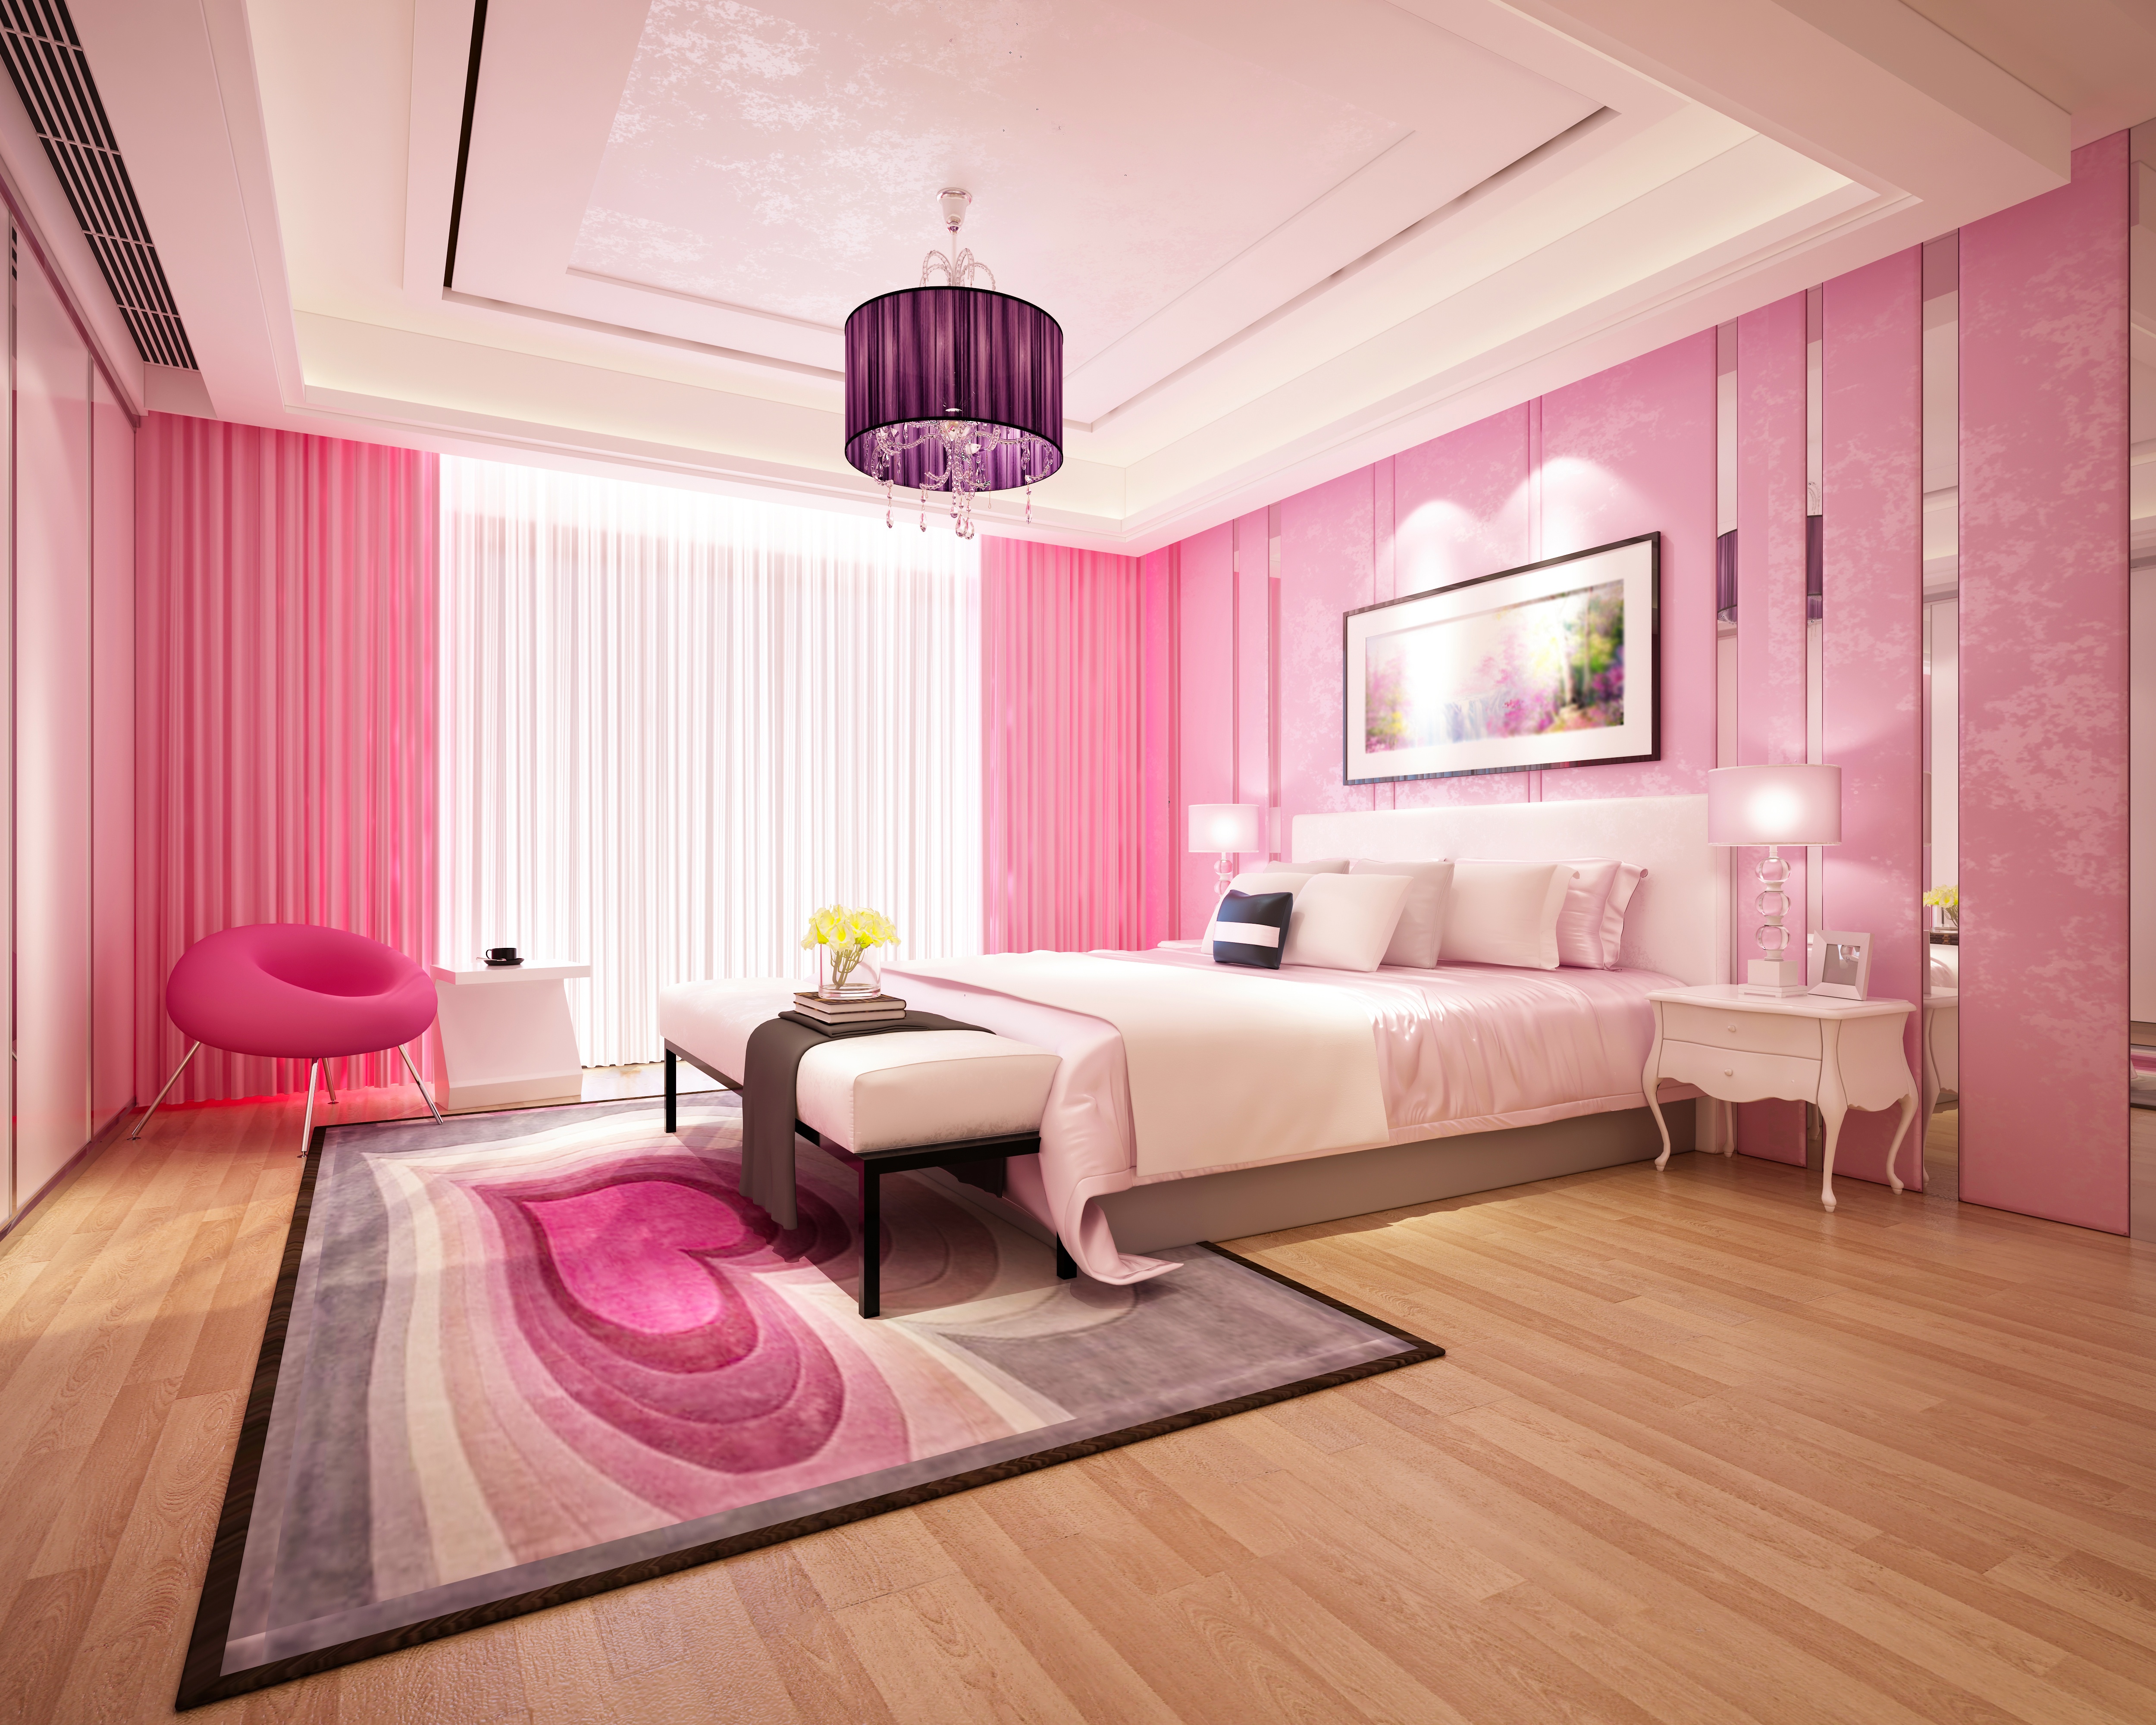 Bed Bedroom Chandelier Furniture Room 5000x4000